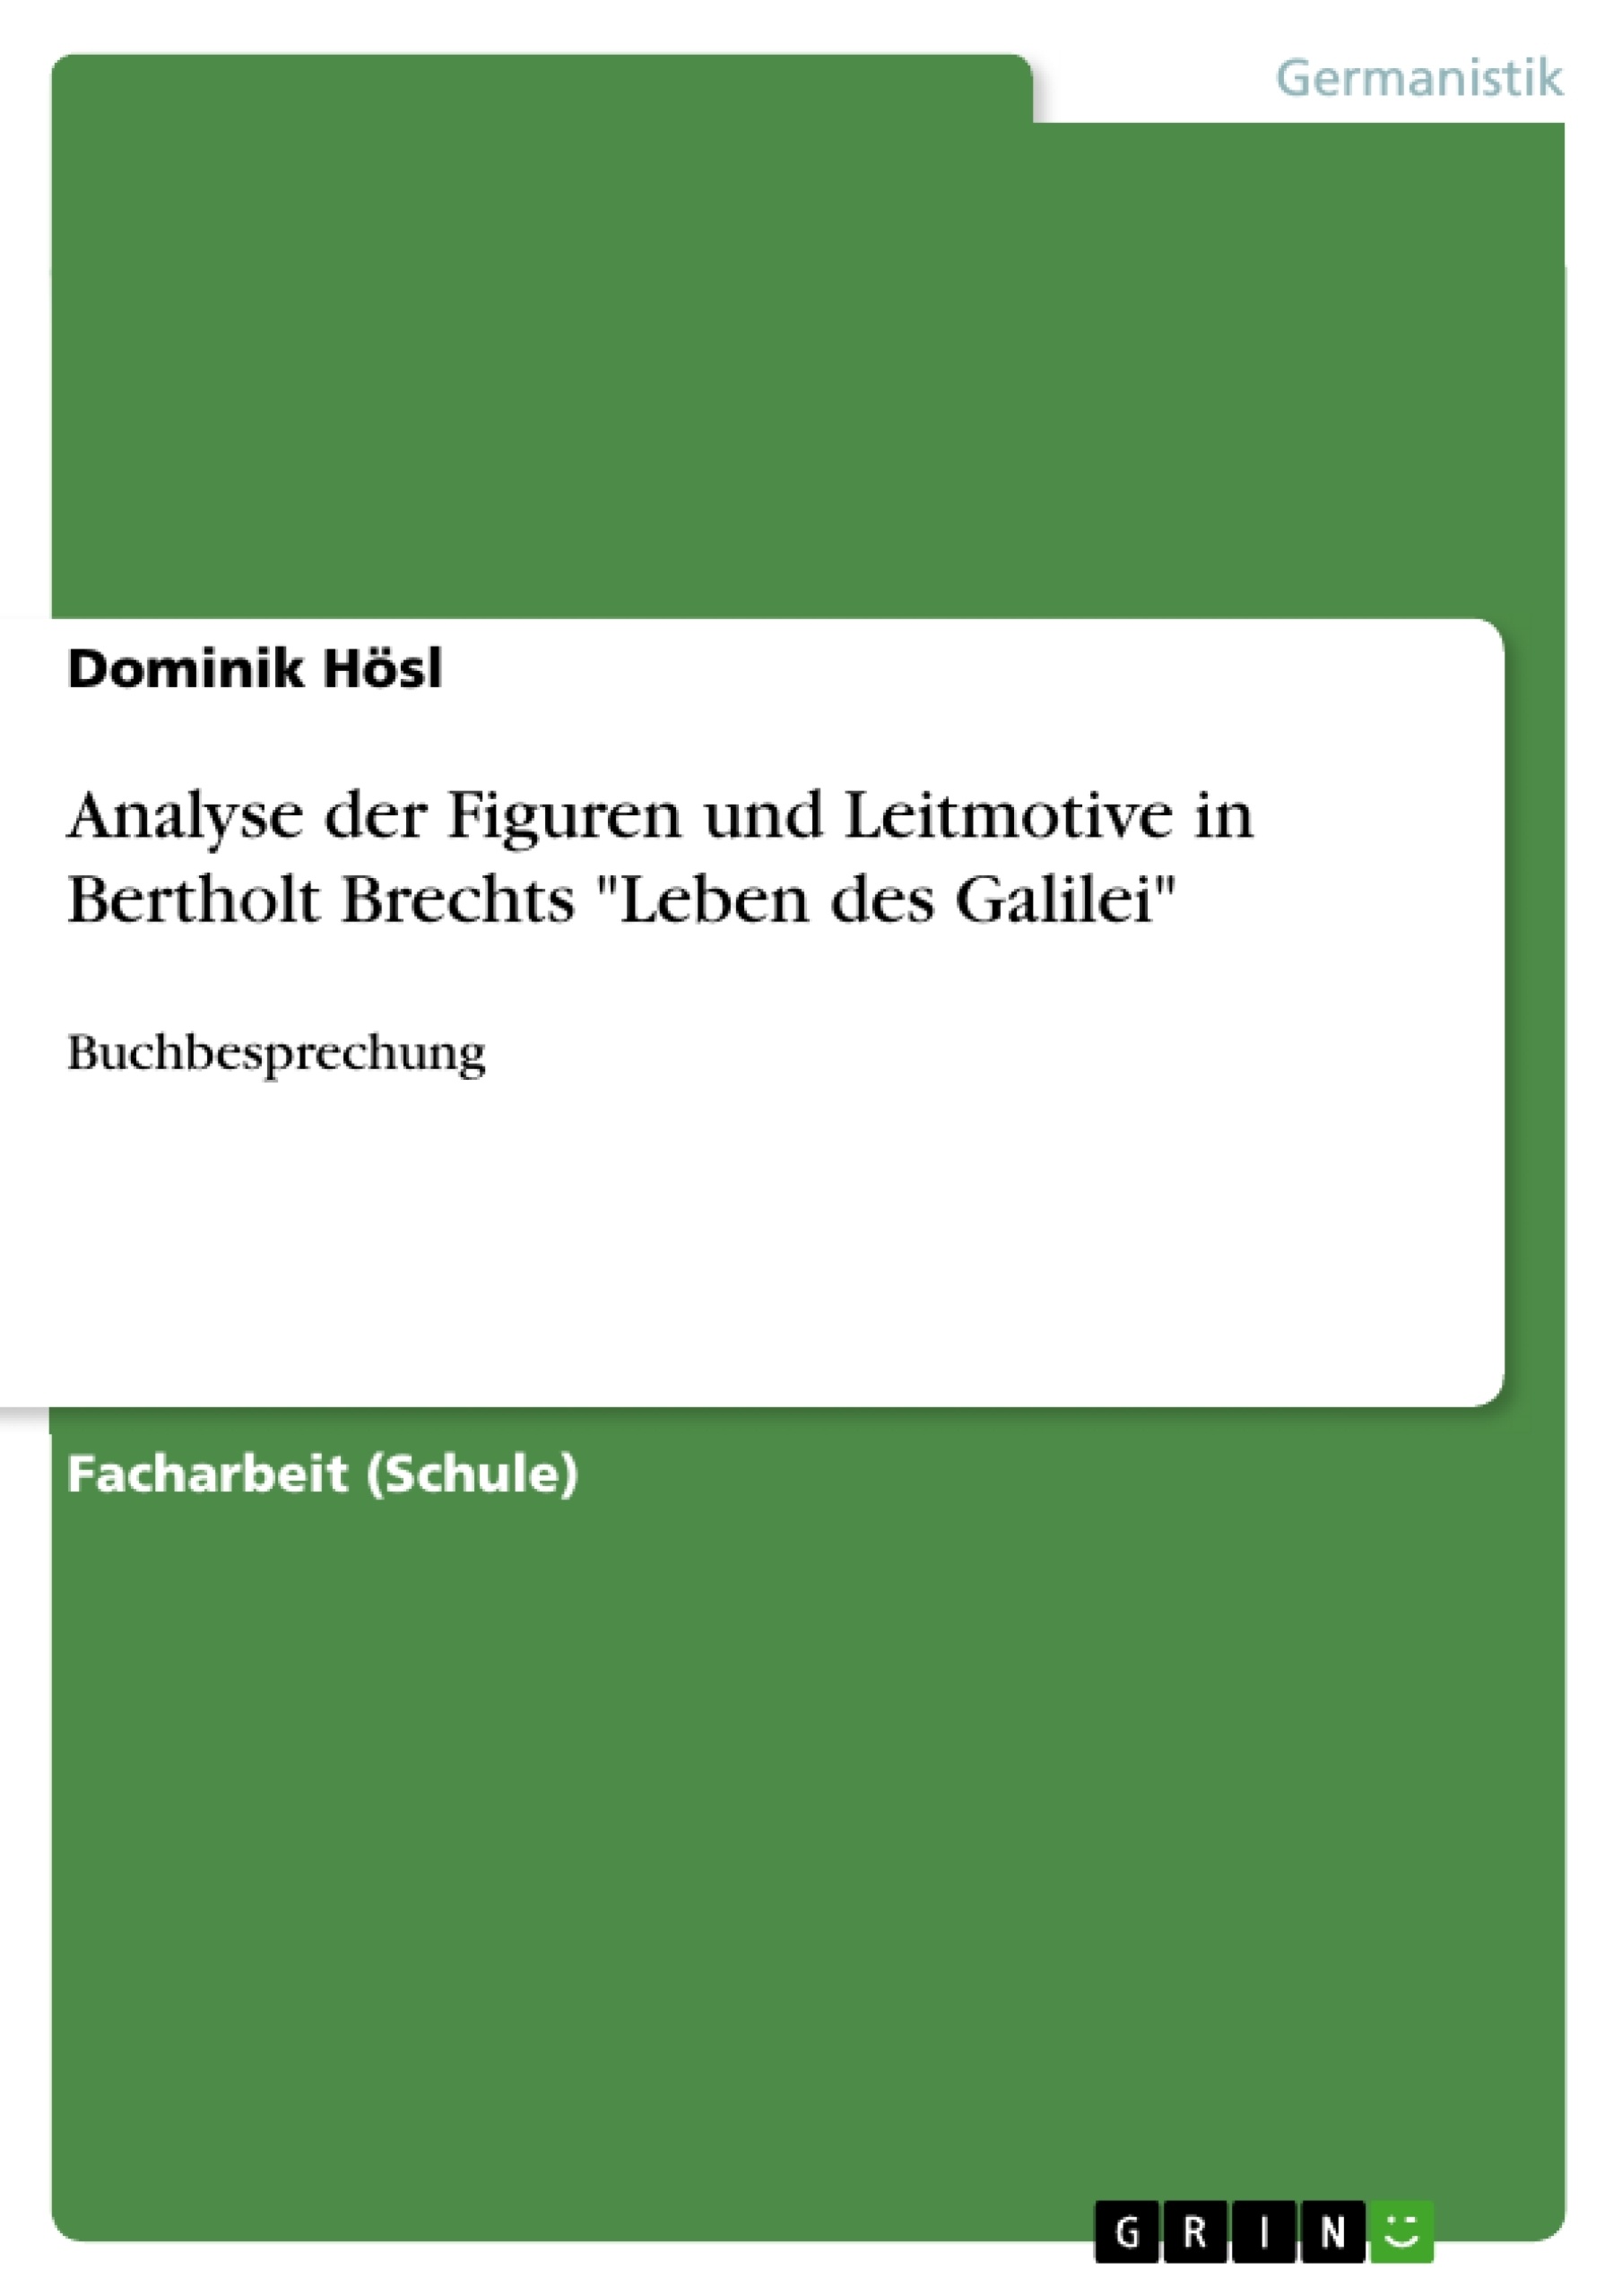 Title: Analyse der Figuren und Leitmotive in Bertholt Brechts "Leben des Galilei"